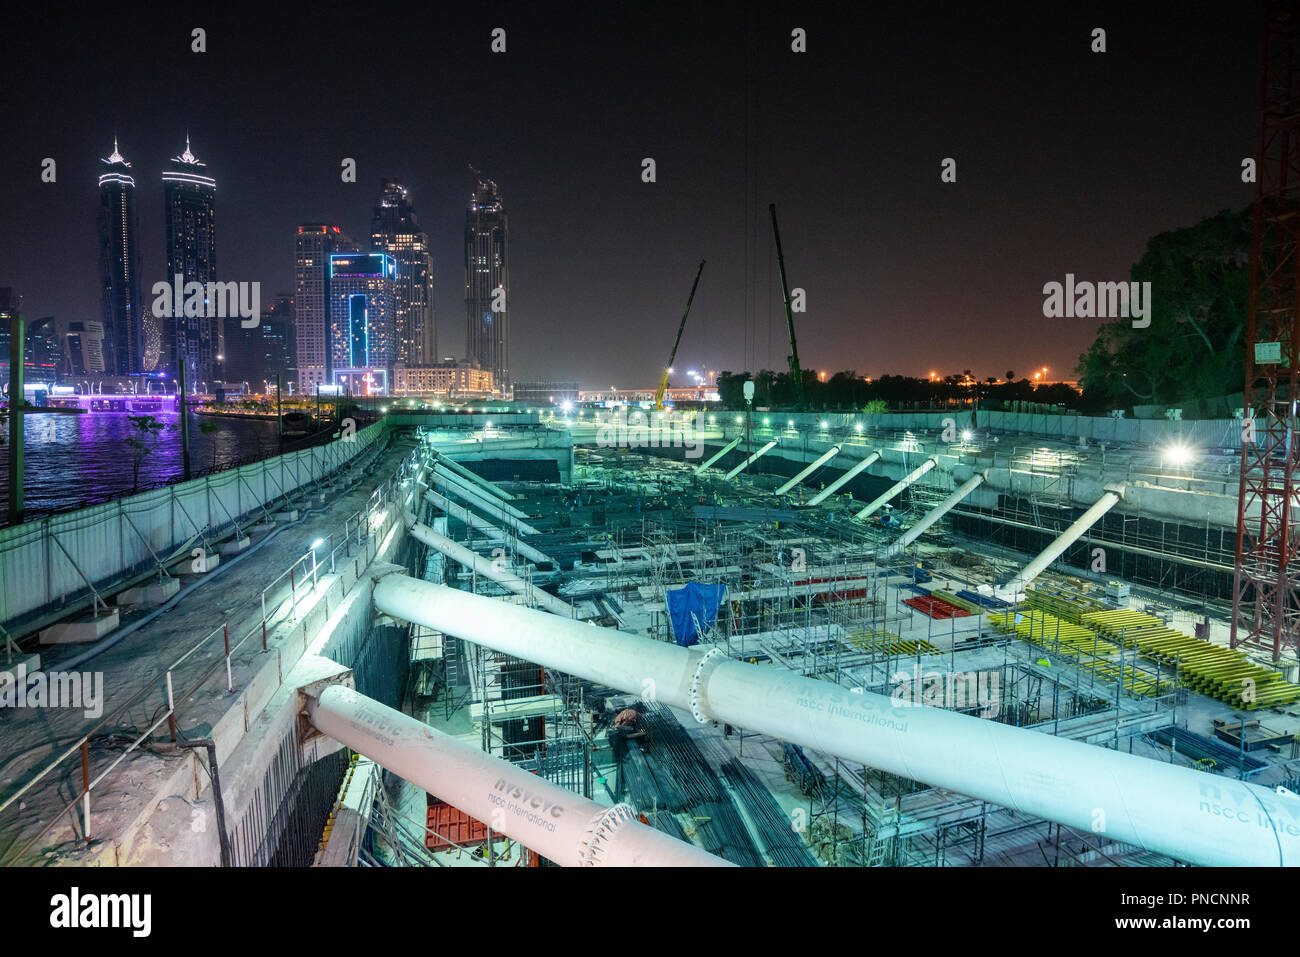 Scavo profondo lavoro di costruzione per il retail e lo sviluppo residenziale accanto al Dubai acqua Canal, Emirati Arabi Uniti, Emirati Arabi Uniti Foto Stock